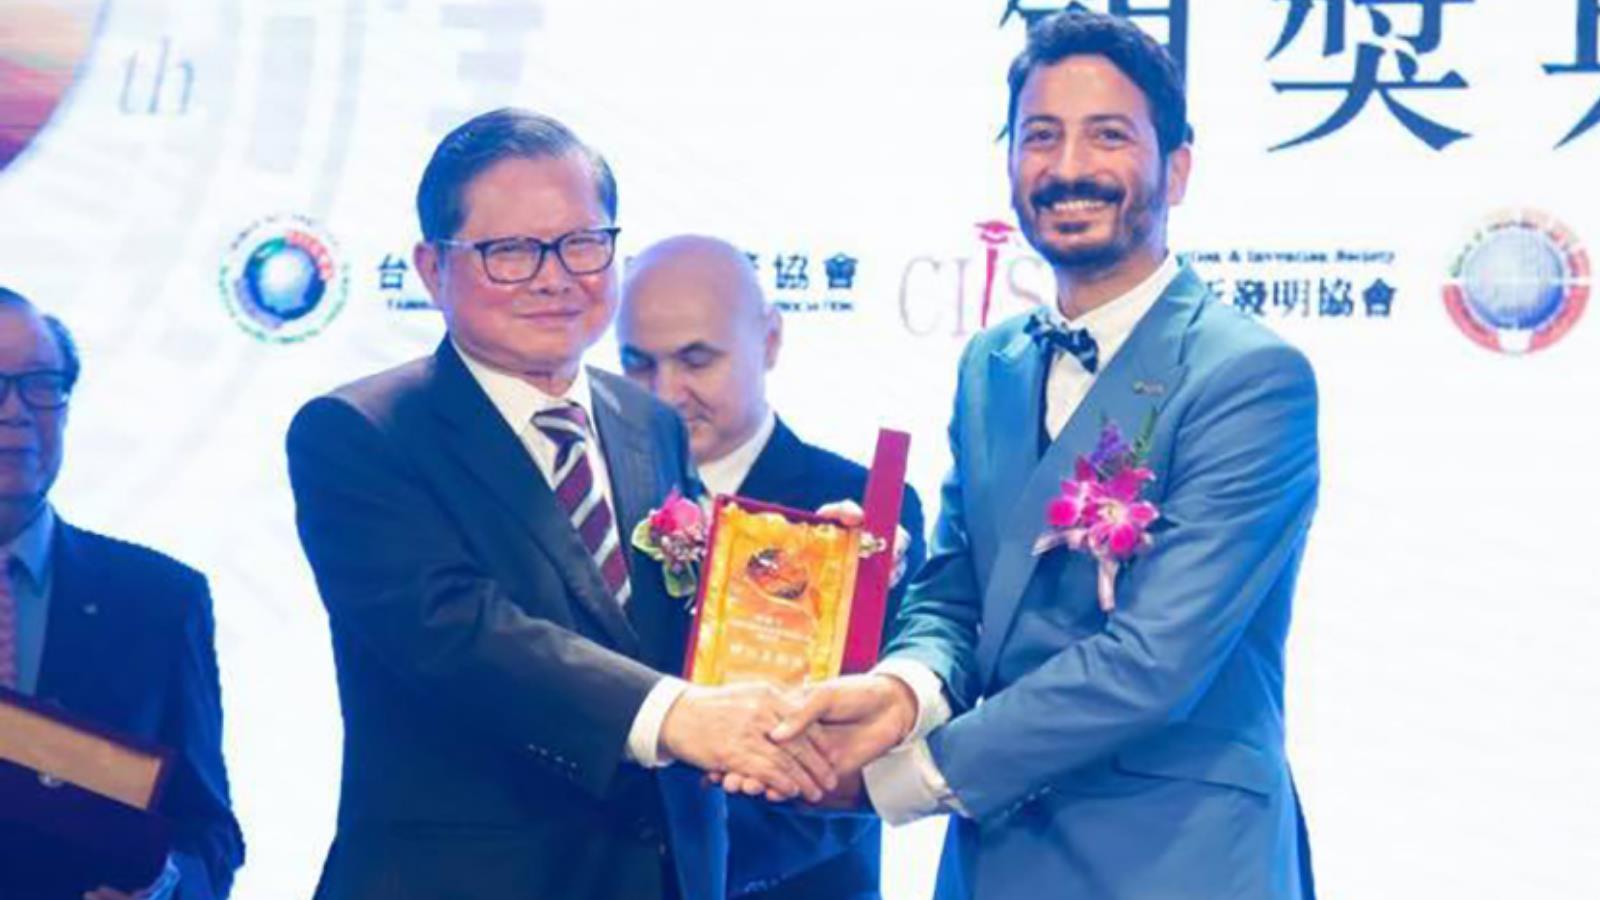 ماجد البوعزاوي يتسلم جائزة في حفل الجائزة الدولية للمبتكرين بالصين (الجزيرة)